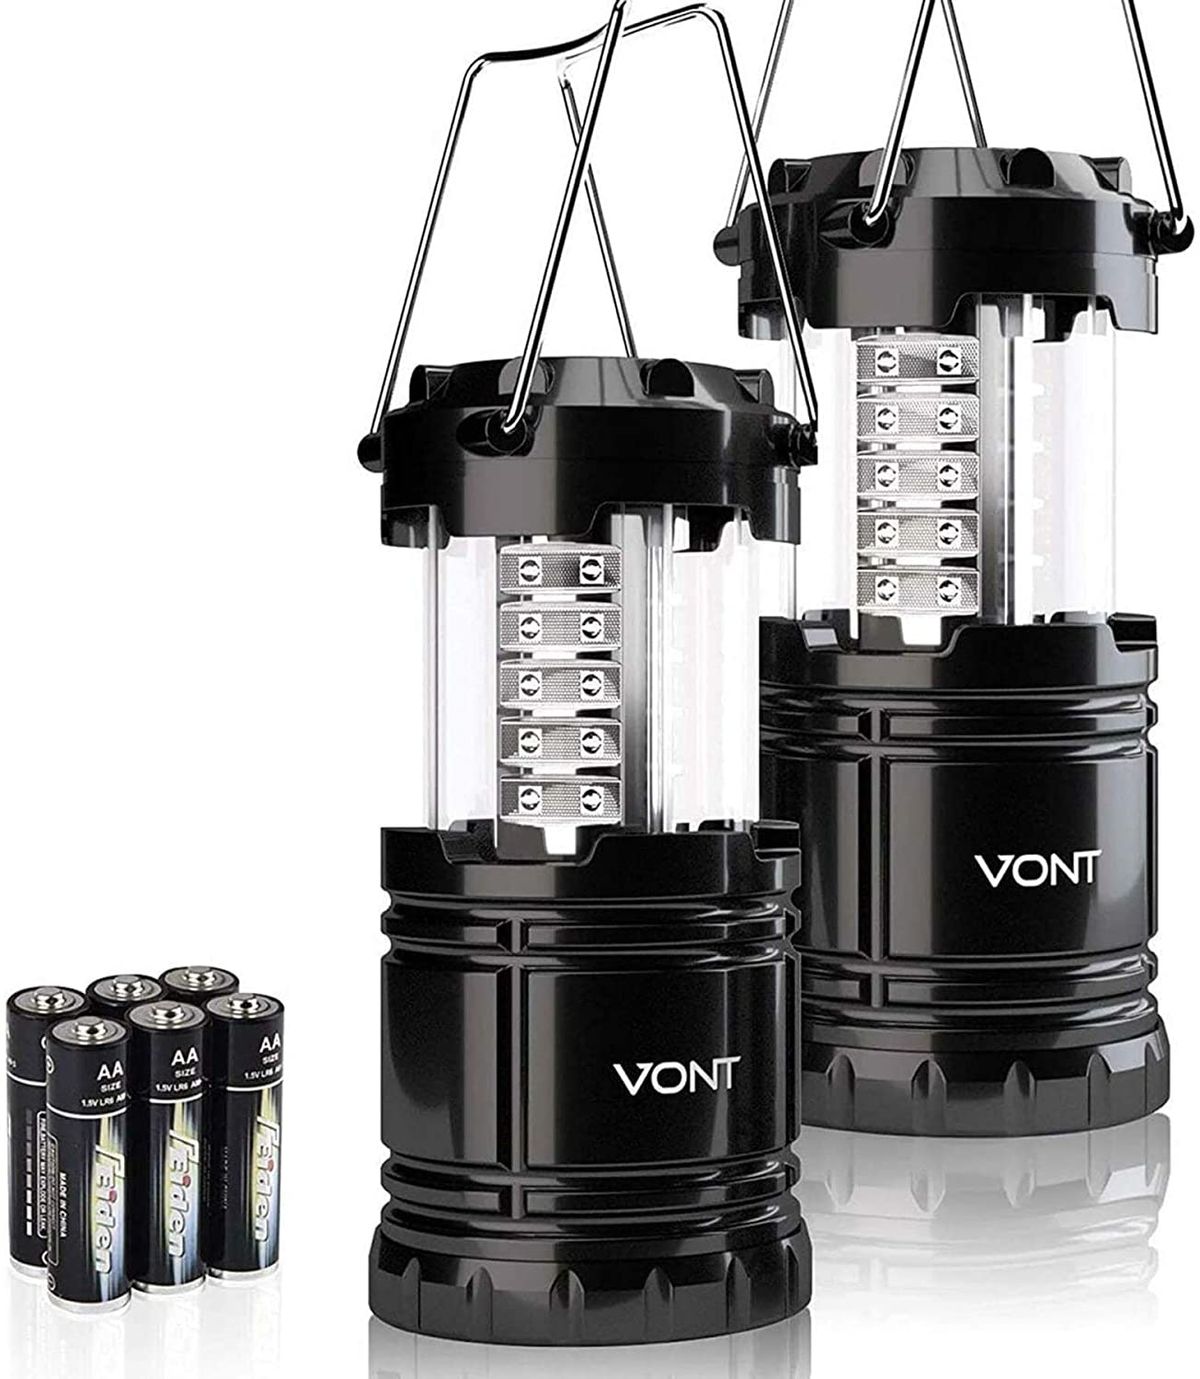 Le 7 migliori lanterne a LED per il campeggio, l'escursionismo e oltre